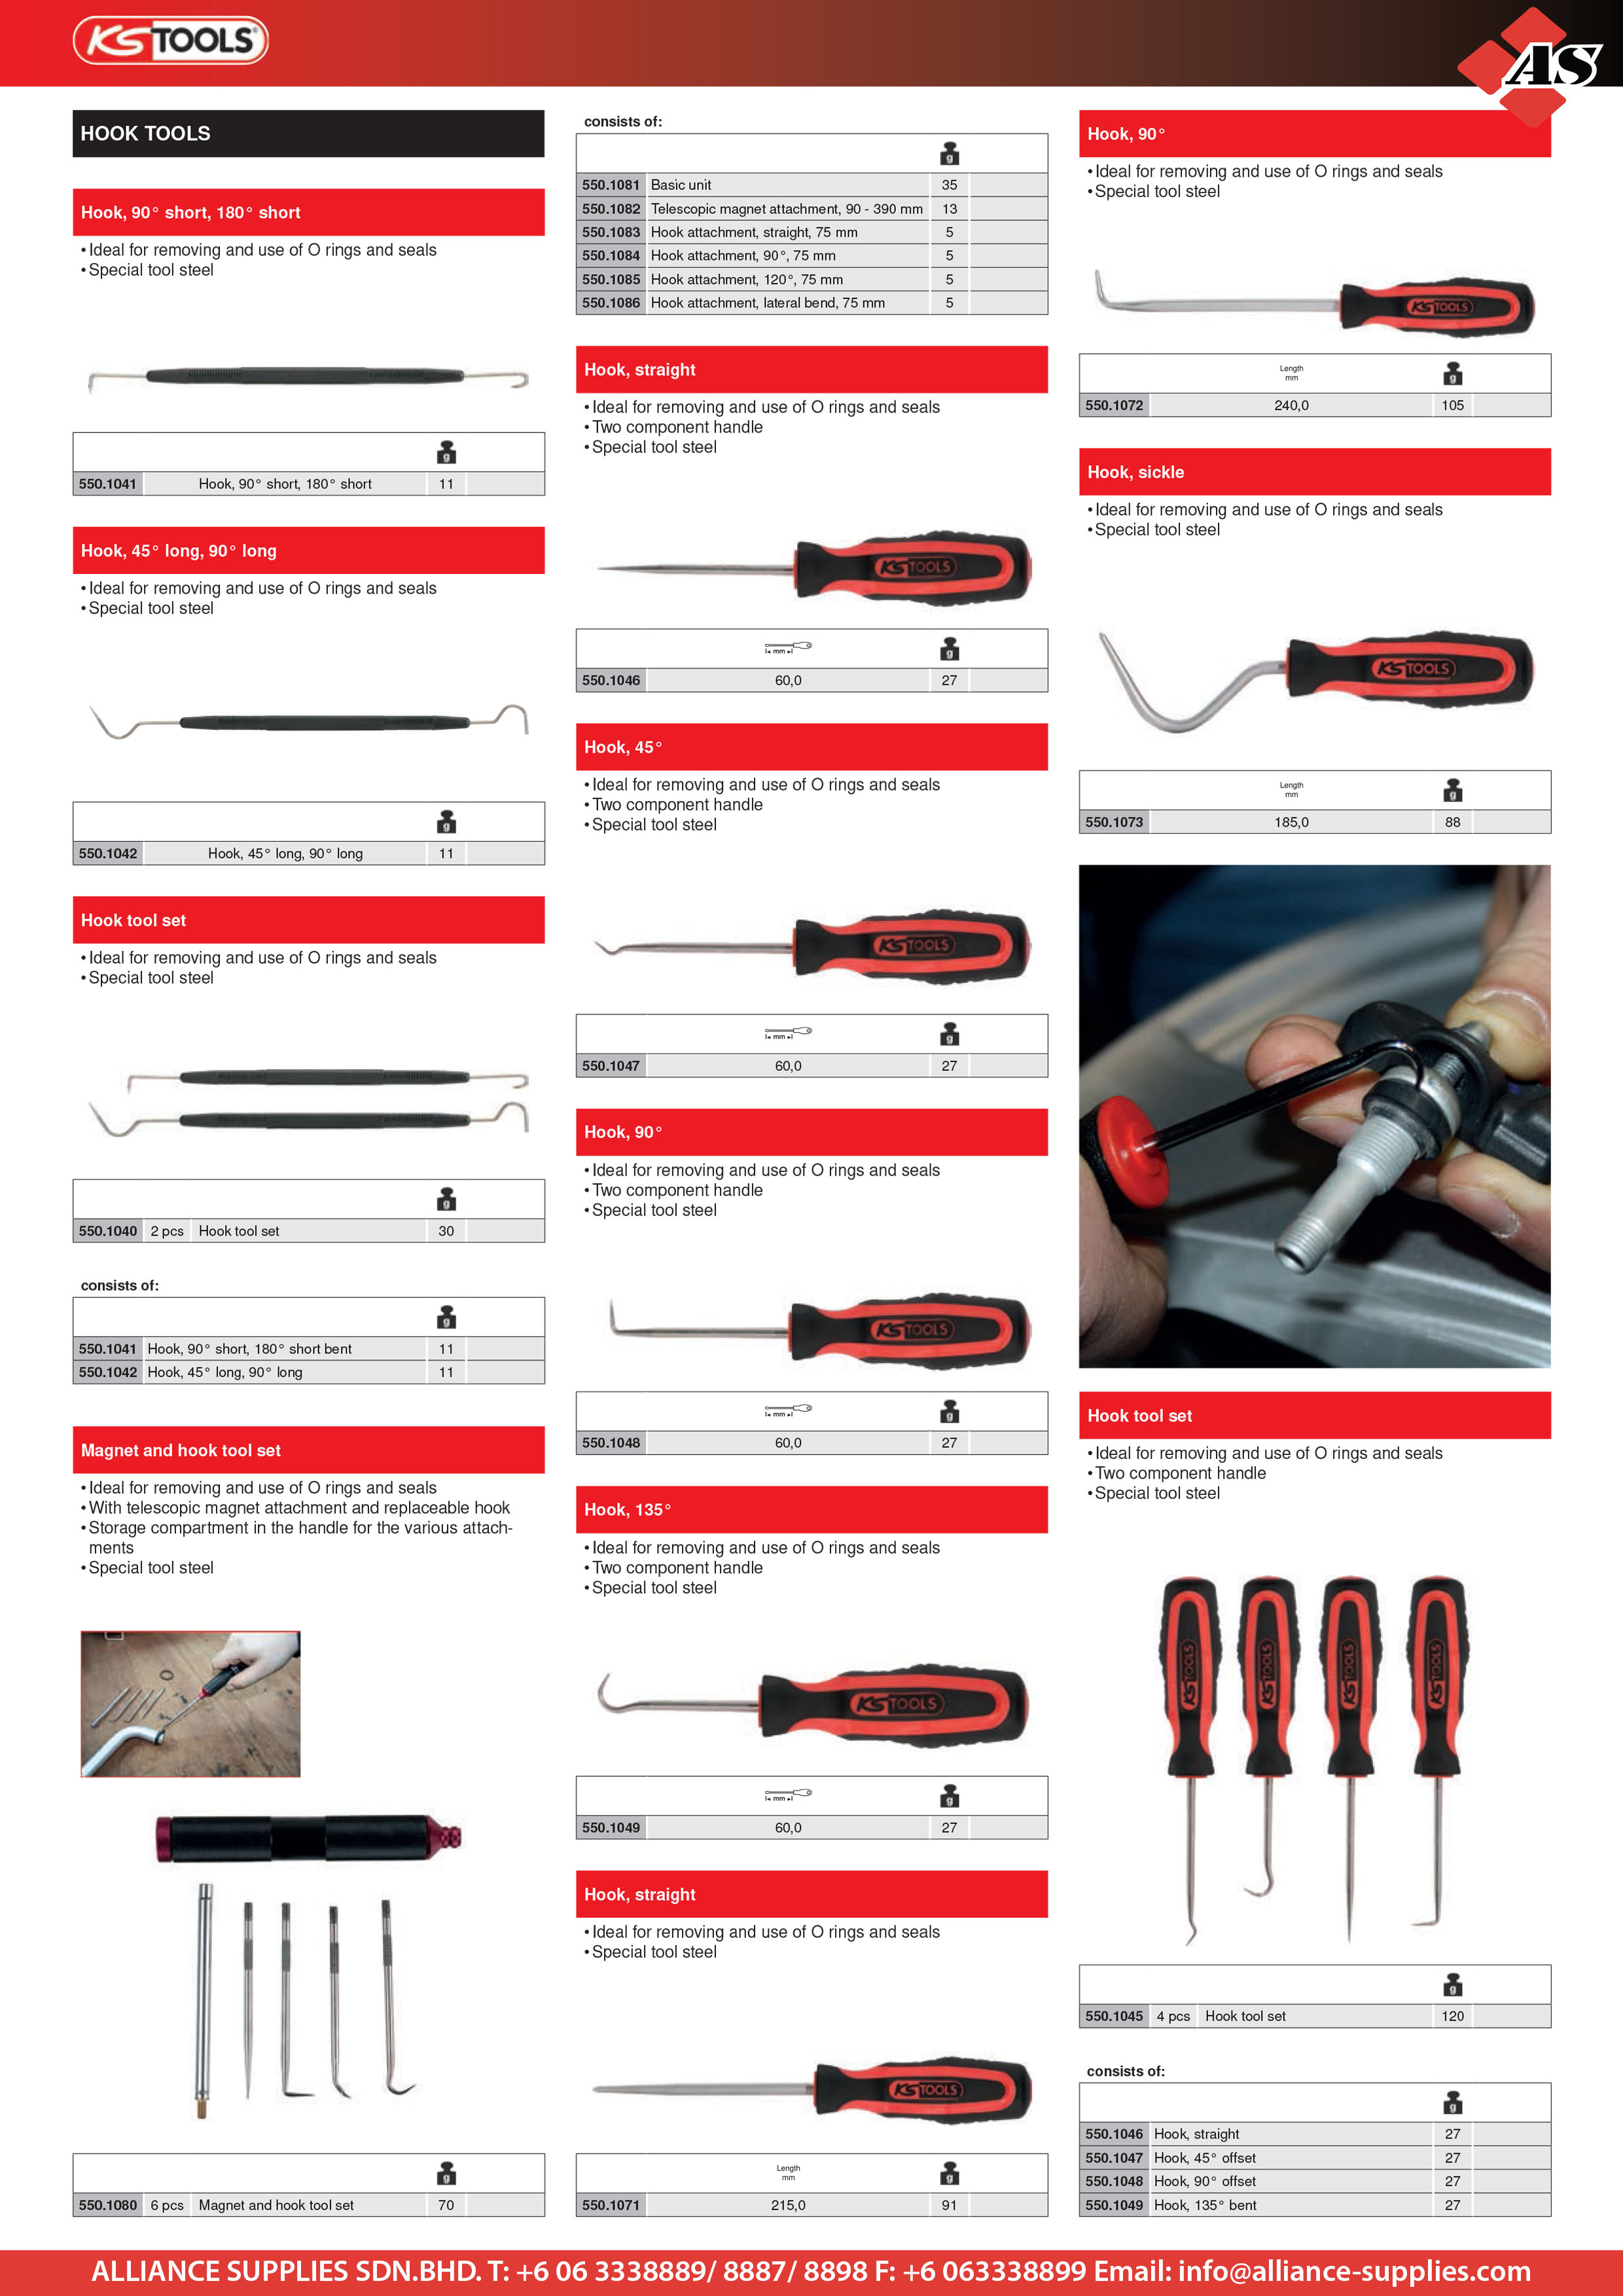 KS TOOLS Hook Tools KS TOOLS Hook Tools KS TOOLS Precision Tools KS TOOLS  Supplier, Supply, Supplies | Alliance Supplies Sdn Bhd